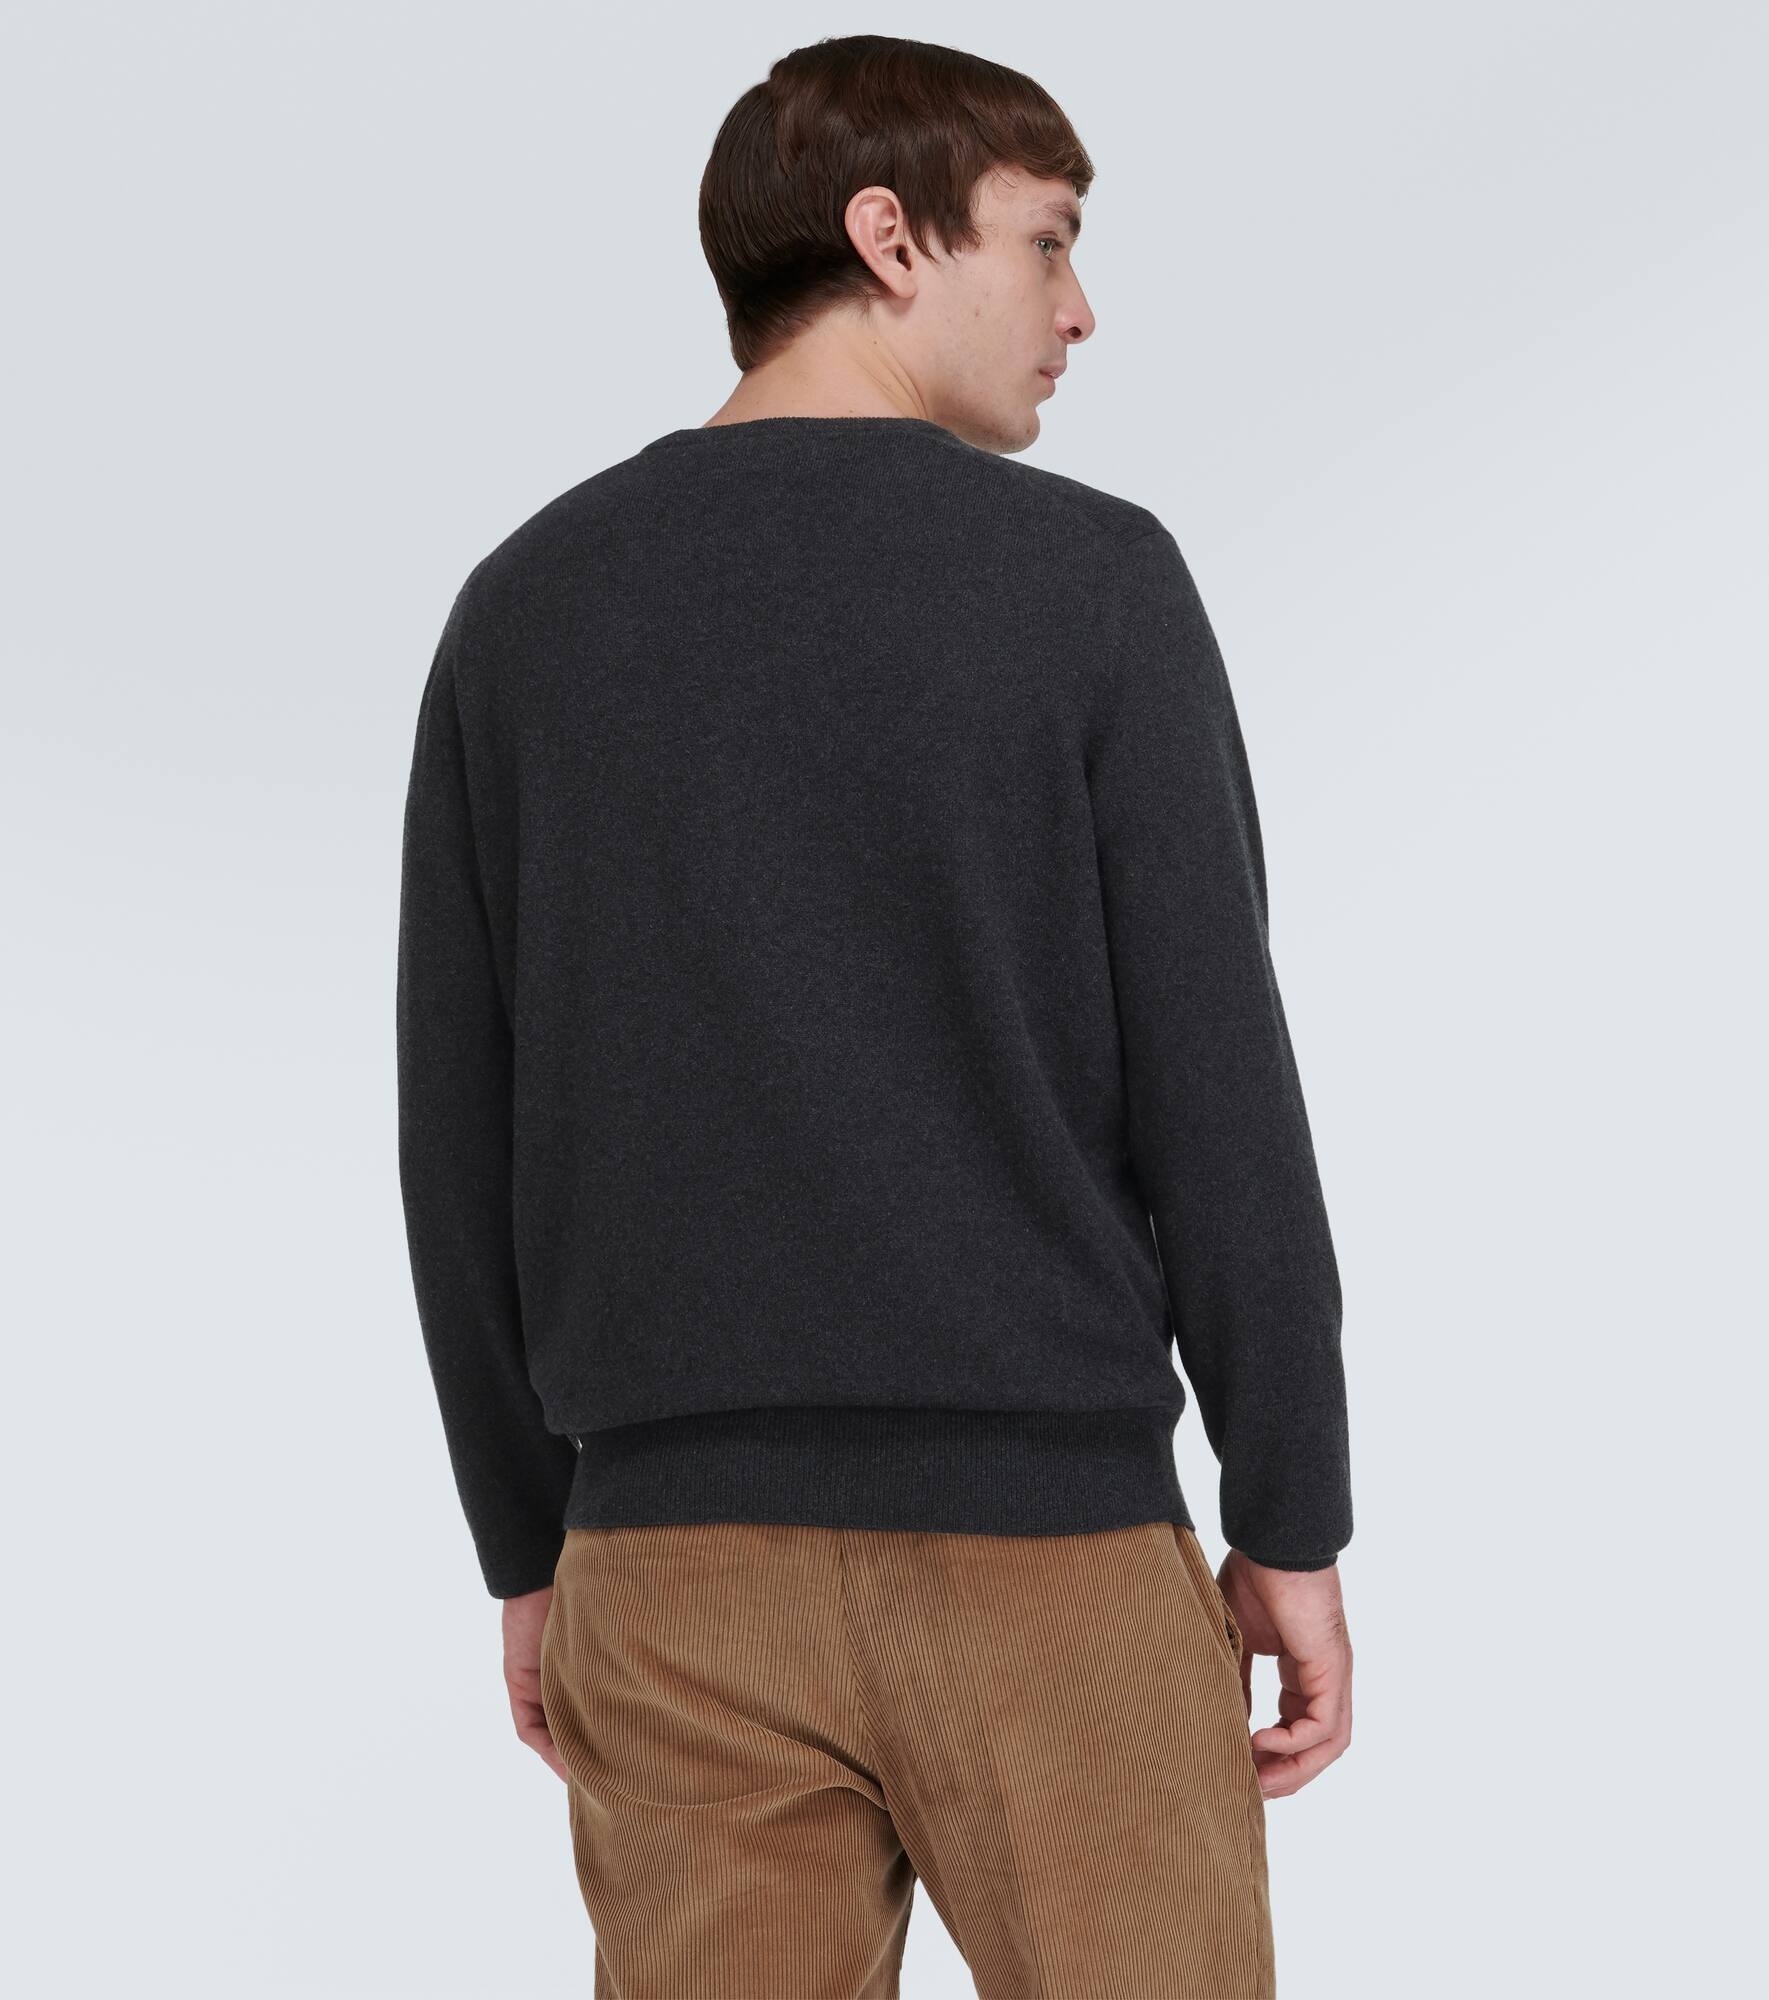 Scollo cashmere sweater - 4